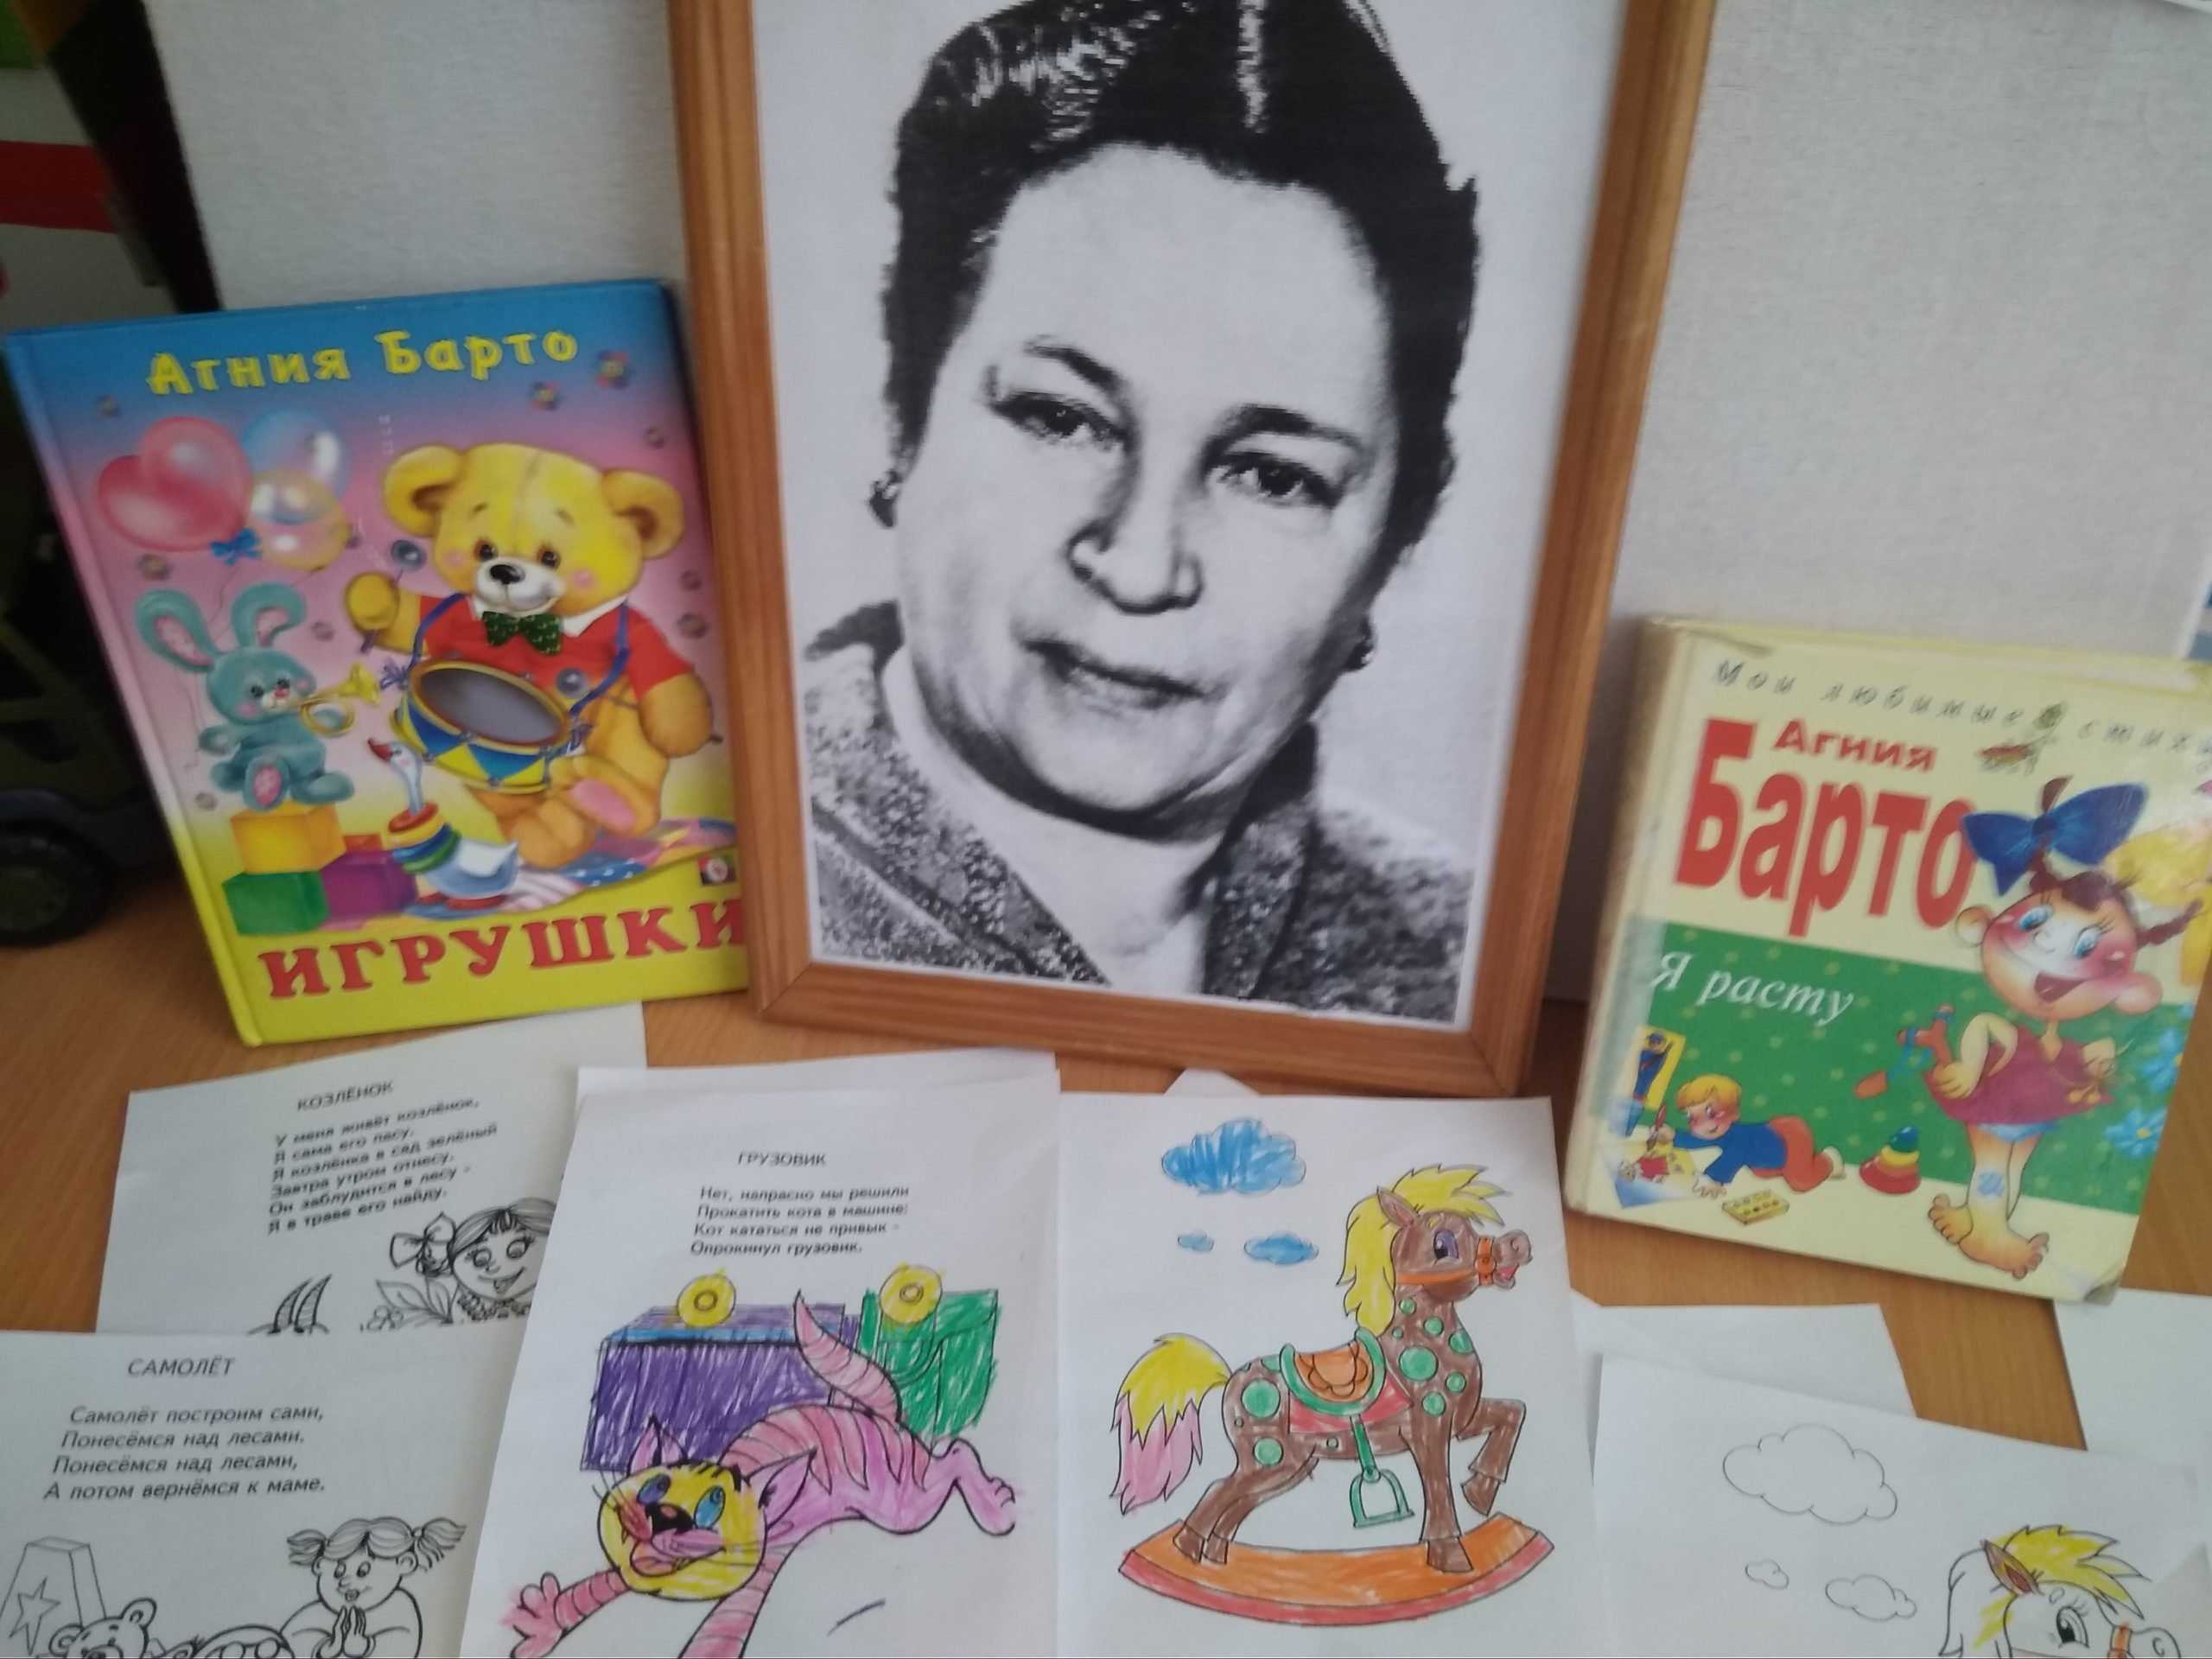 Вспомни какие произведения а барто ты читал. Иллюстрации к произведениям Агнии Барто для детей. Произведения Агнии Барто произведения. Герои произведений Агний Барто.